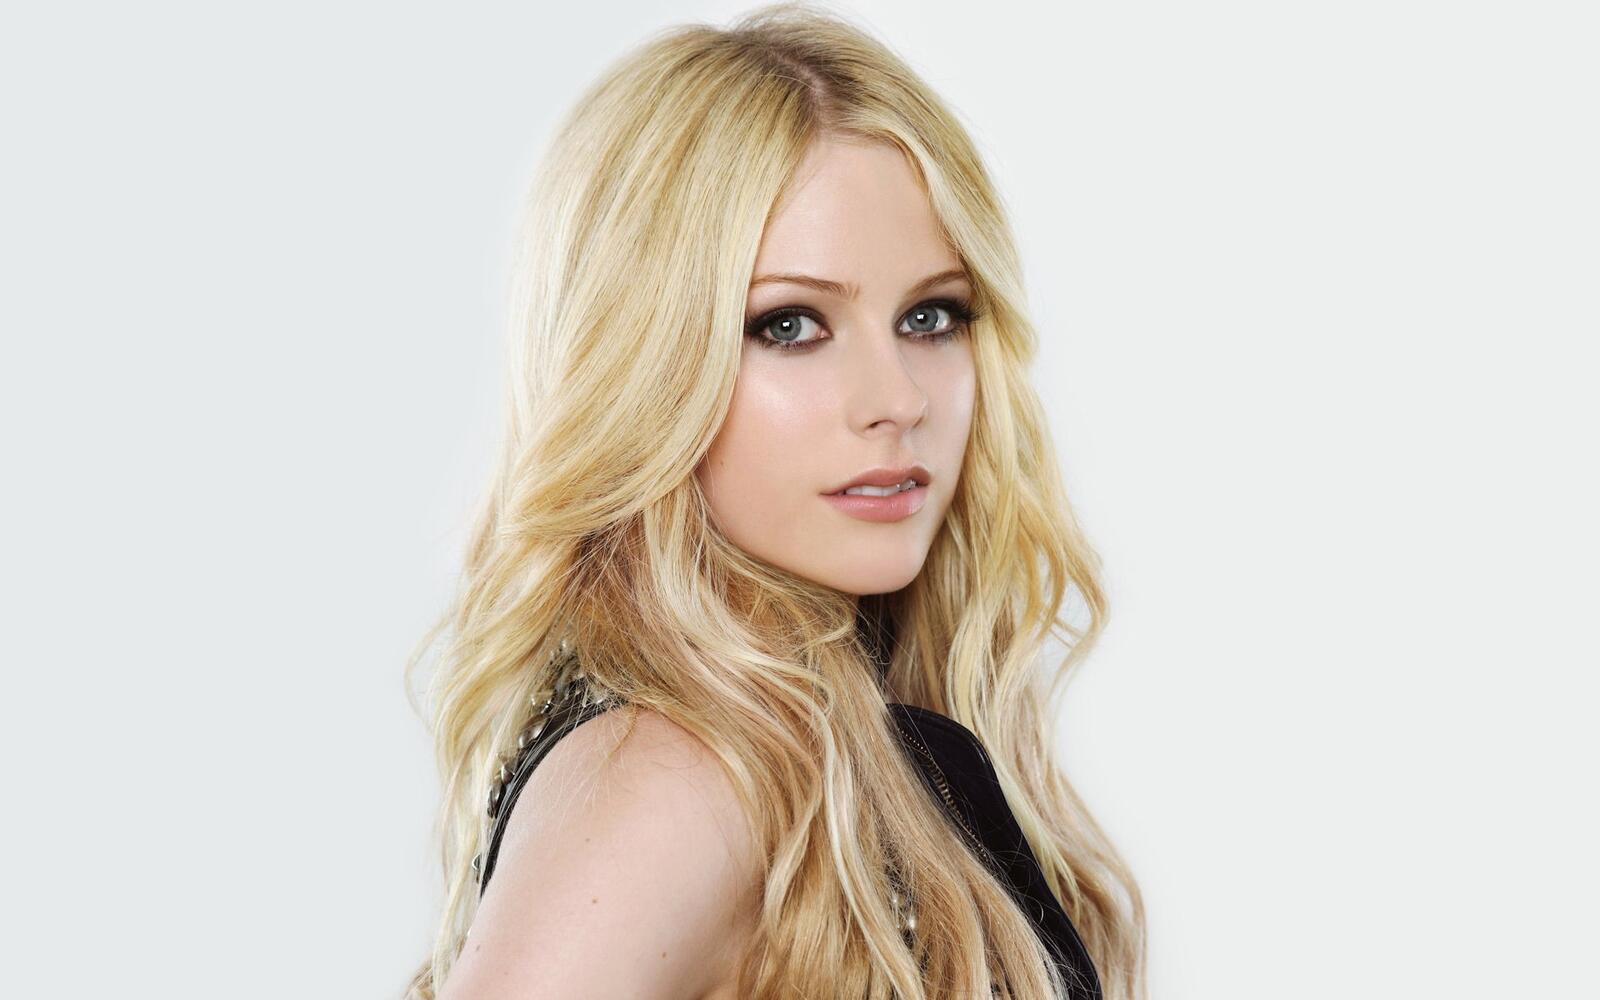 Wallpapers singer girls Avril Lavigne on the desktop